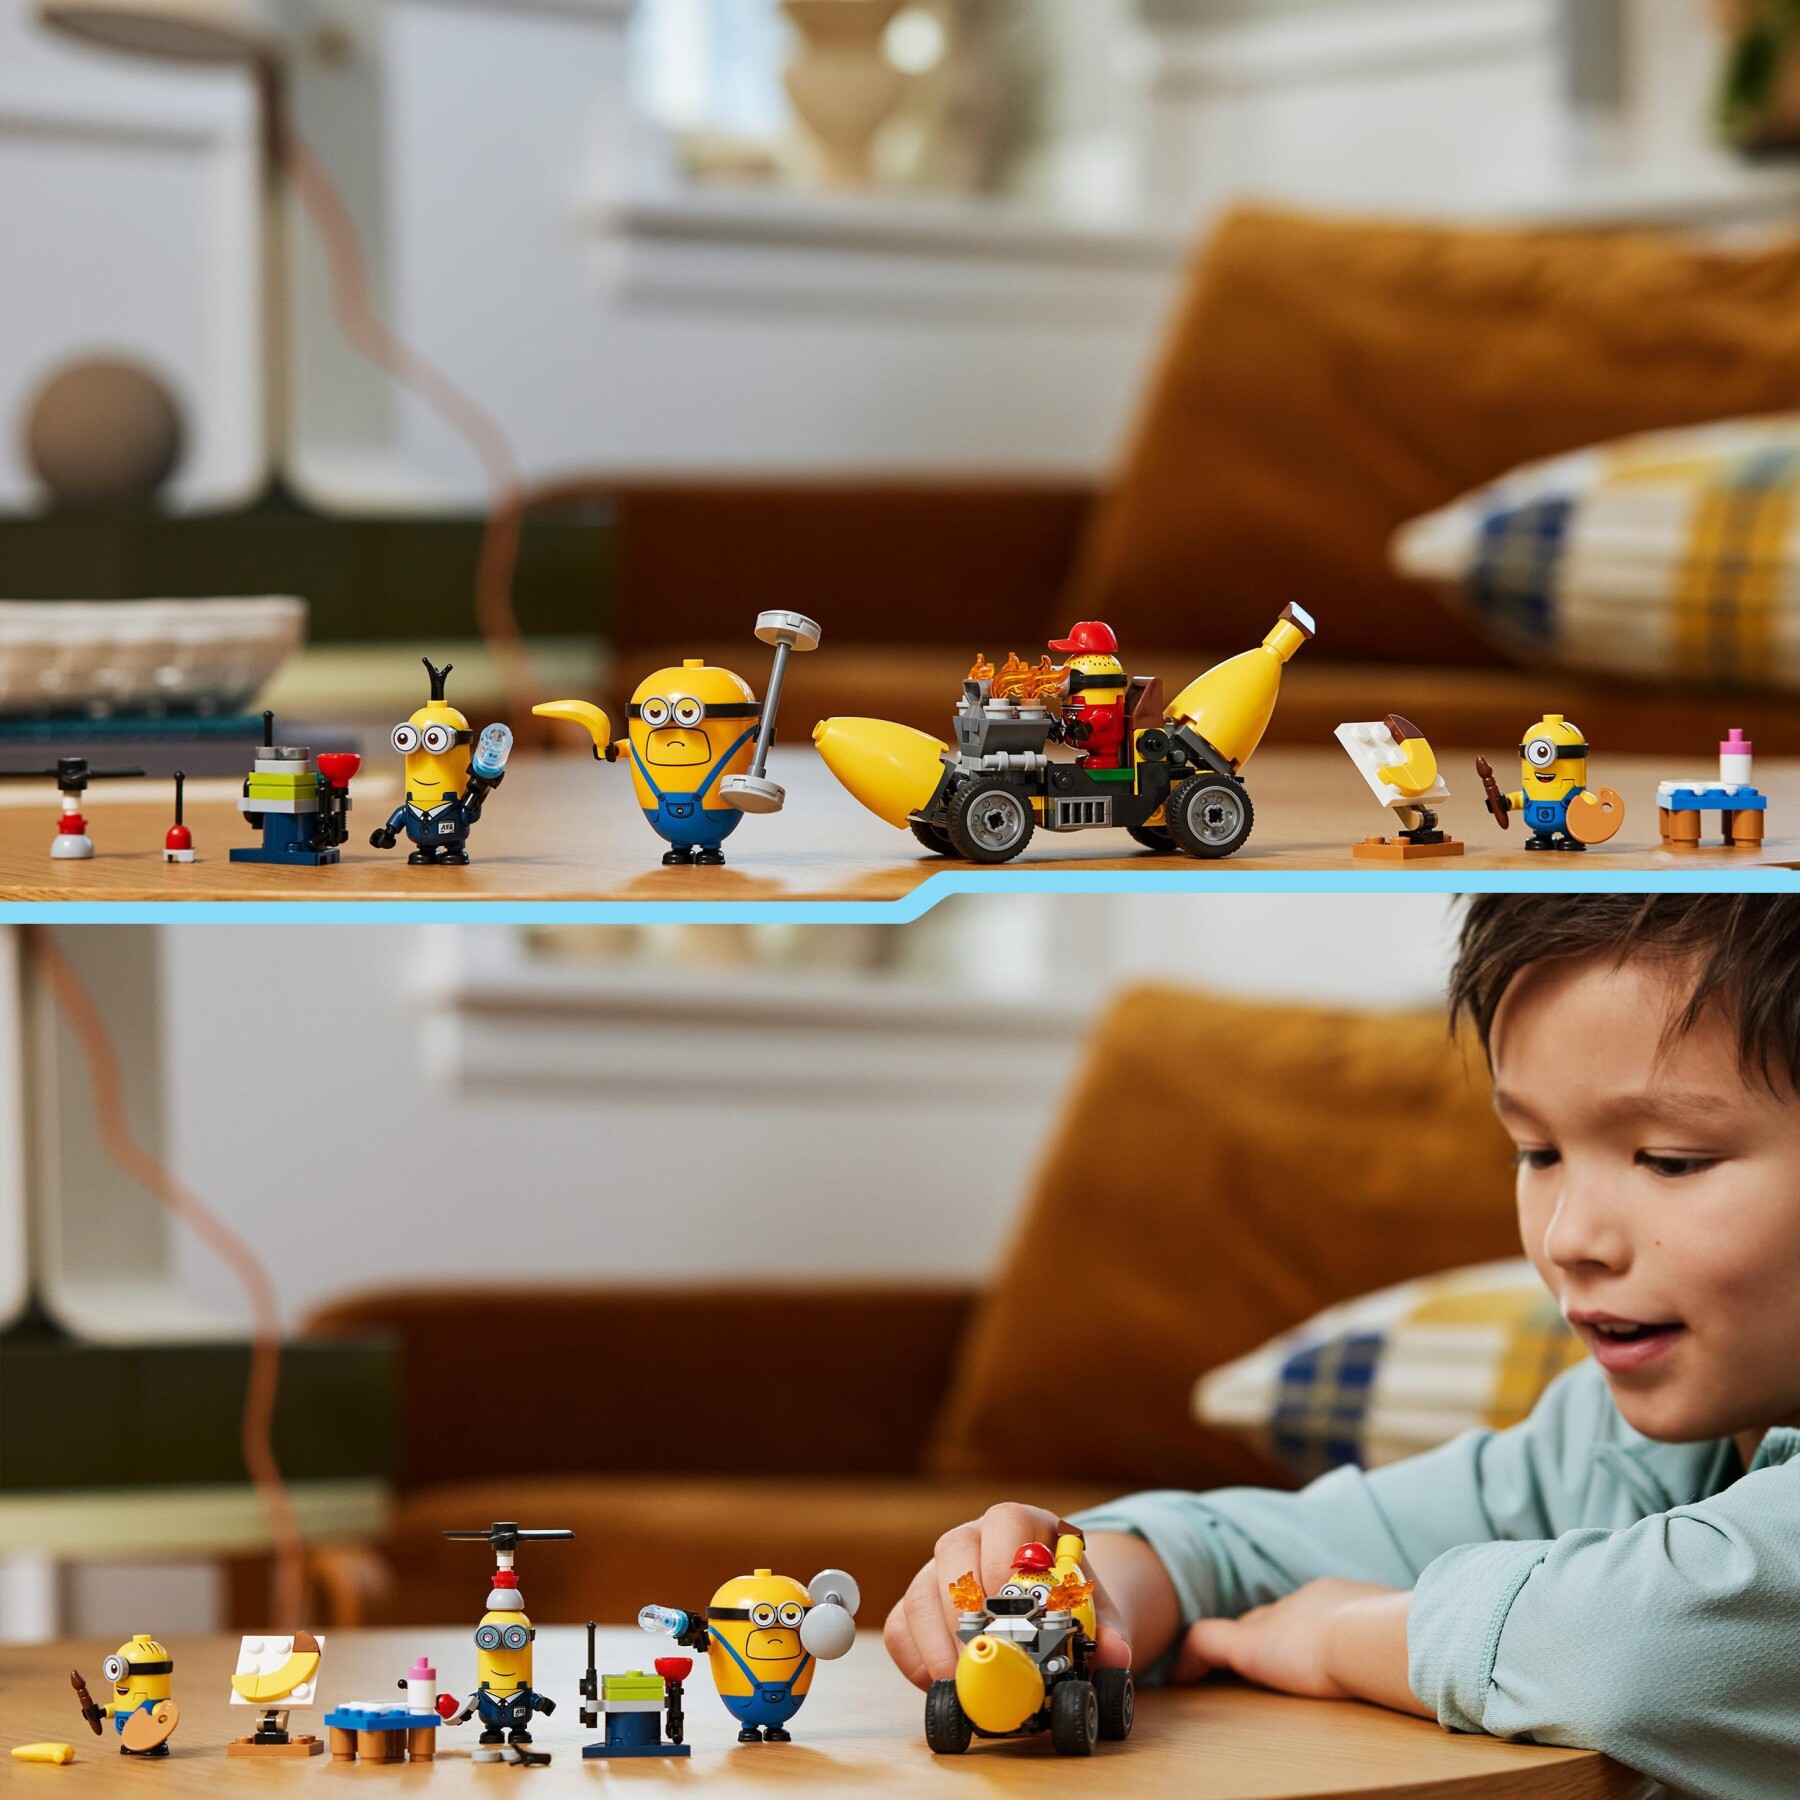 Lego cattivissimo me 75580 i minions e l’auto banana, macchina giocattolo da costruire, giochi per bambini 6+, idea regalo - MINIONS